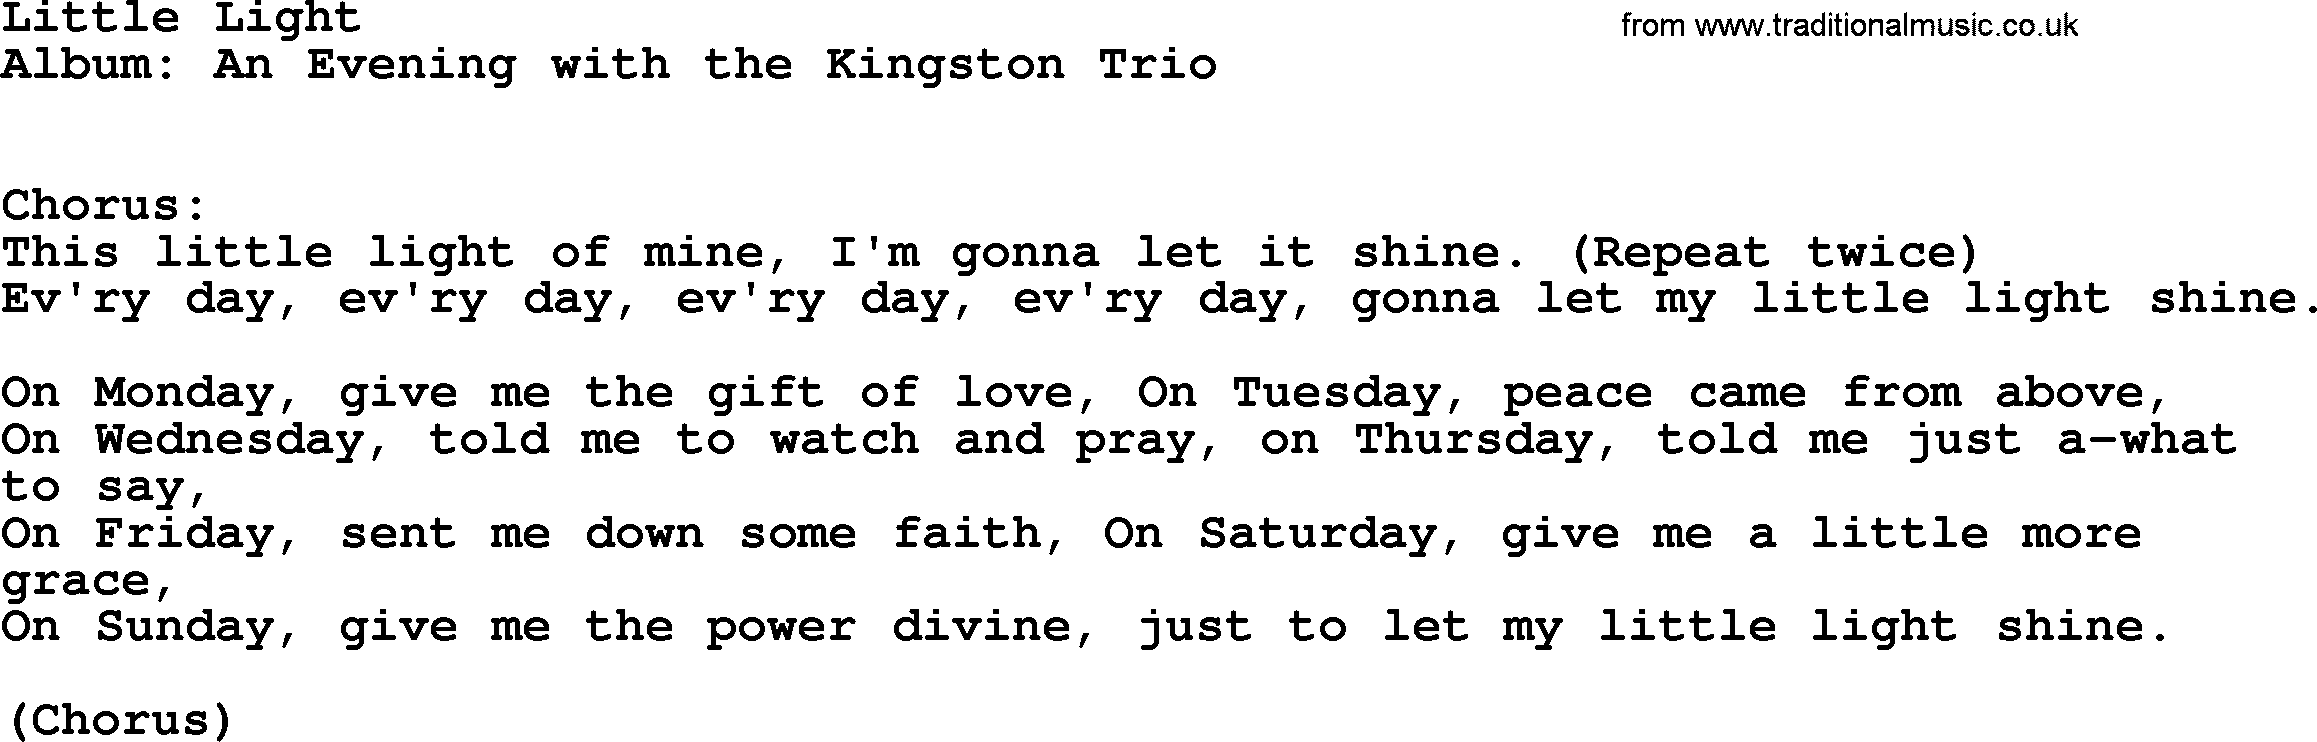 Kingston Trio song Little Light, lyrics